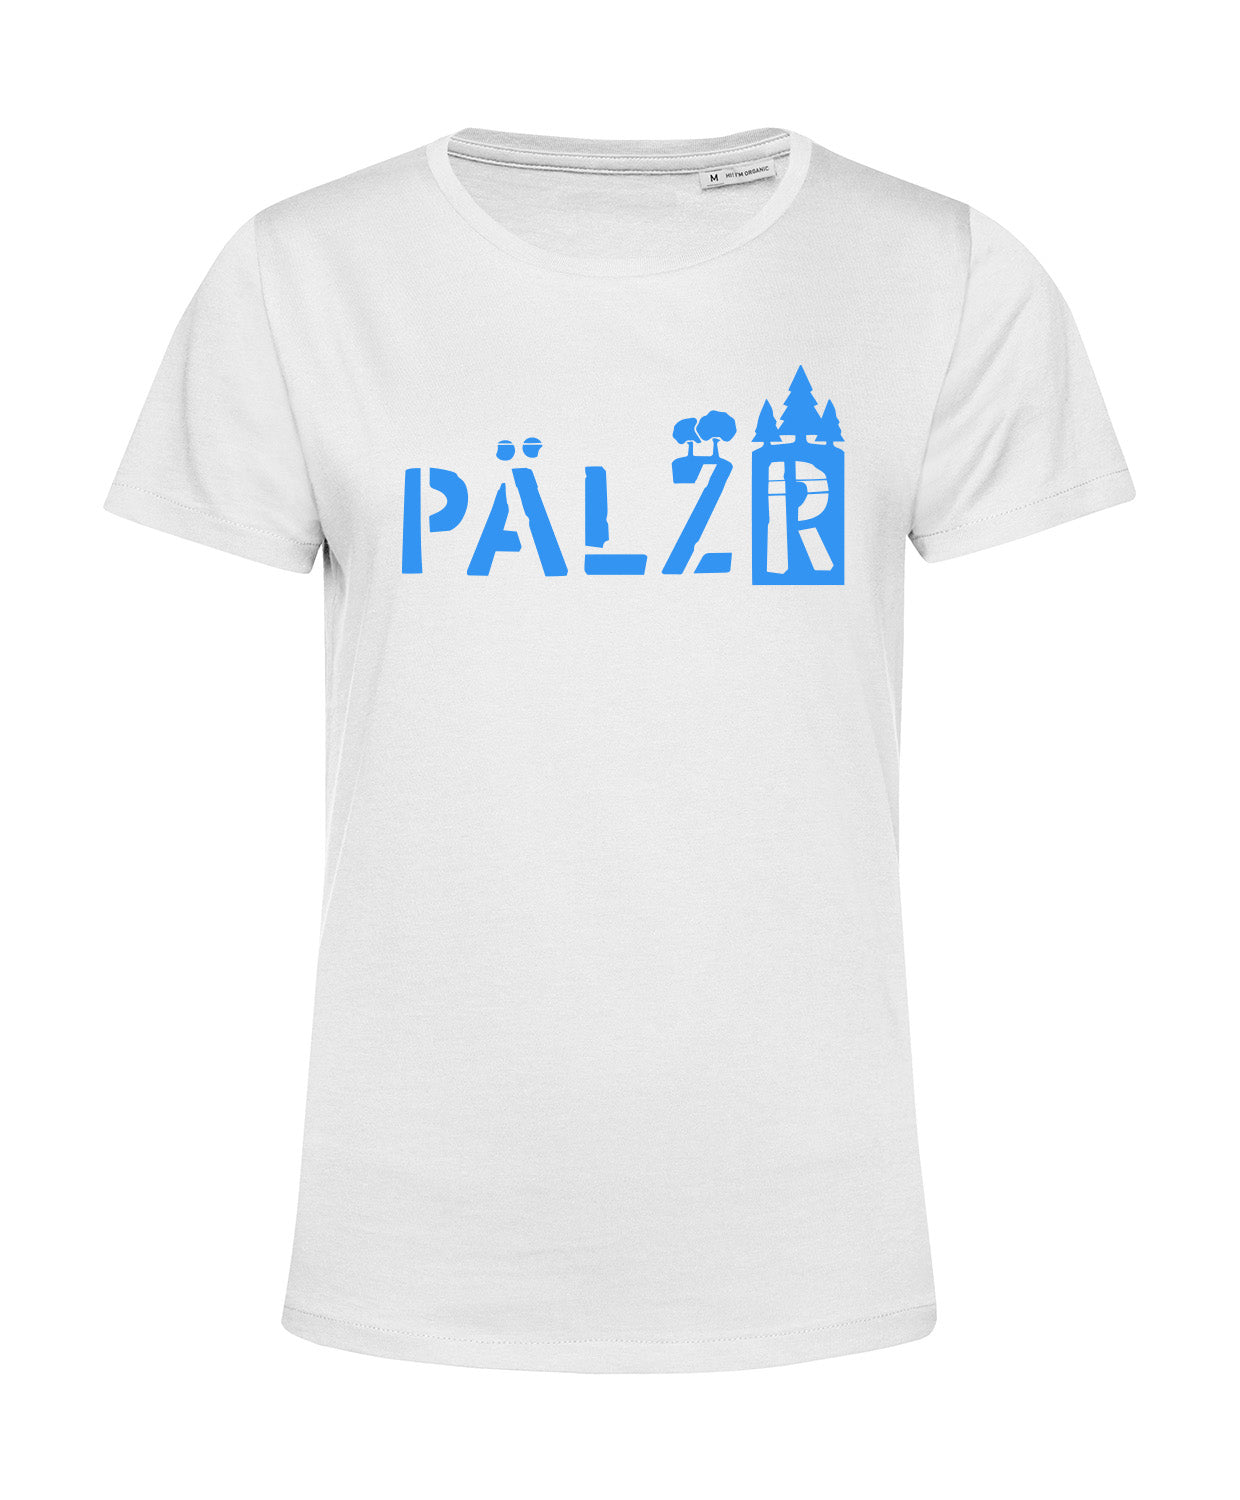 Frauen | T-Shirt | PÄLZRwald | weiss | Logo Neon Blau